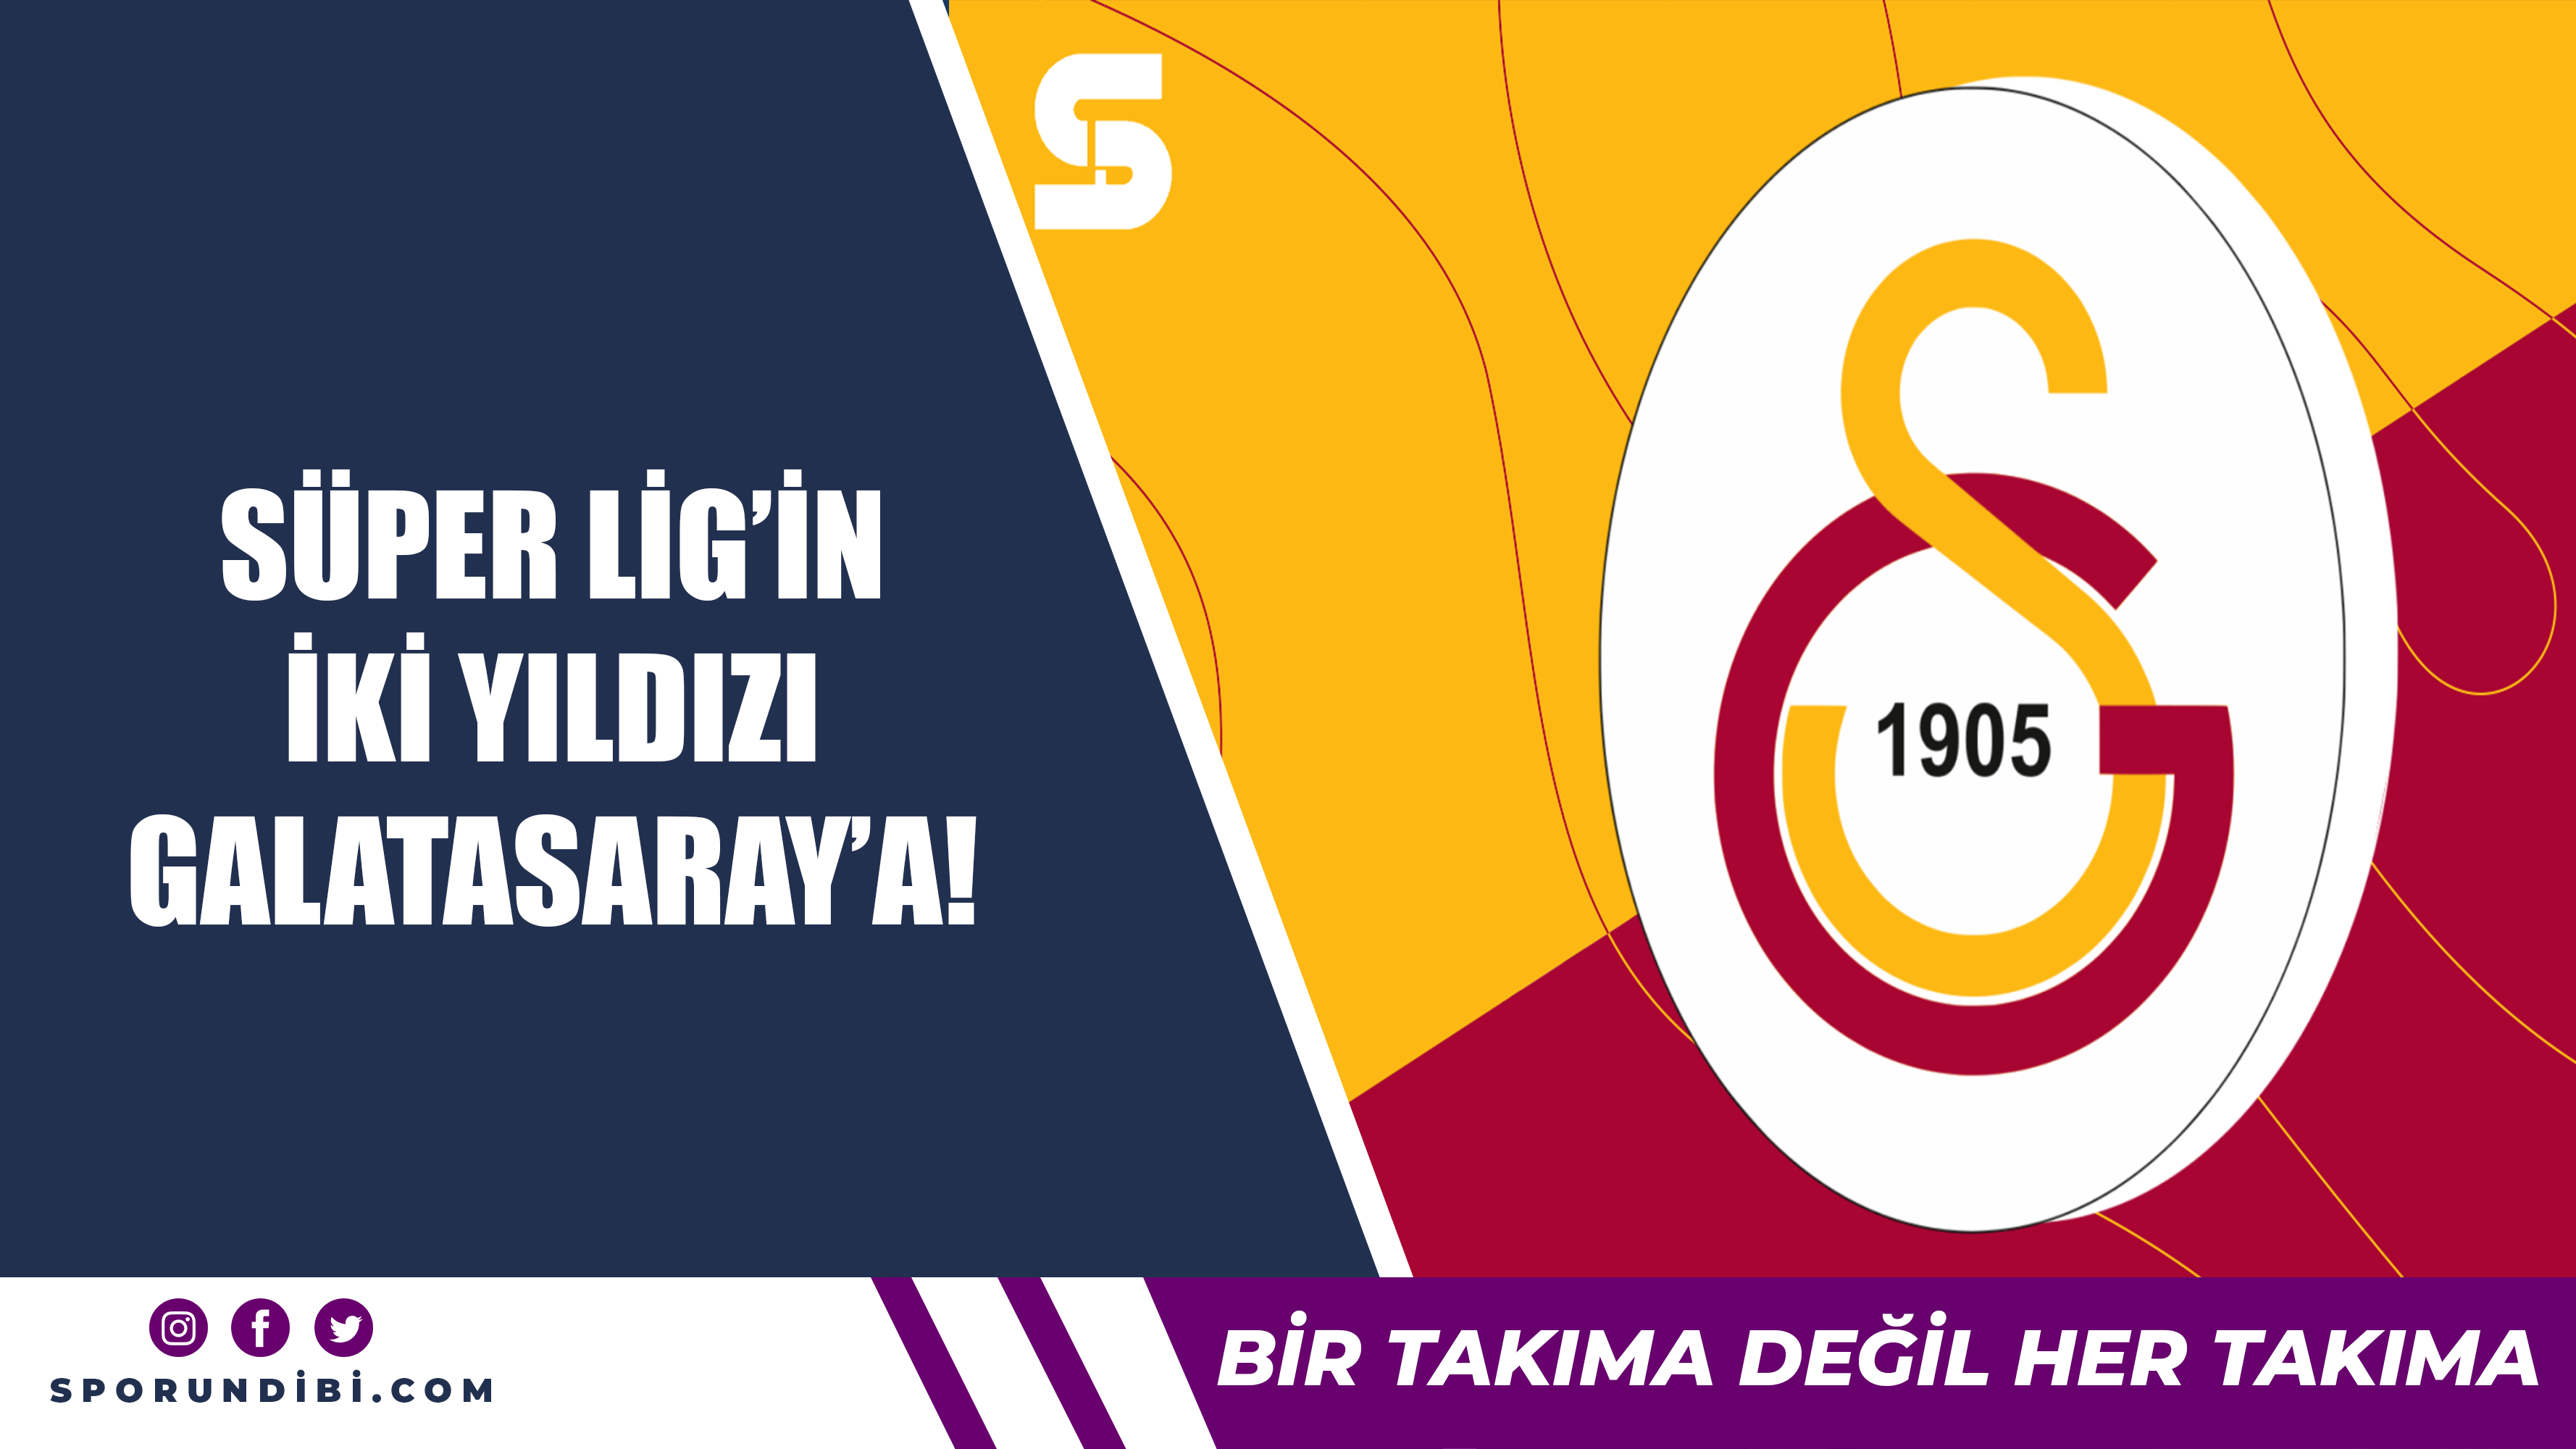 Süper Lig'in iki yıldızı Galatasaray'a!